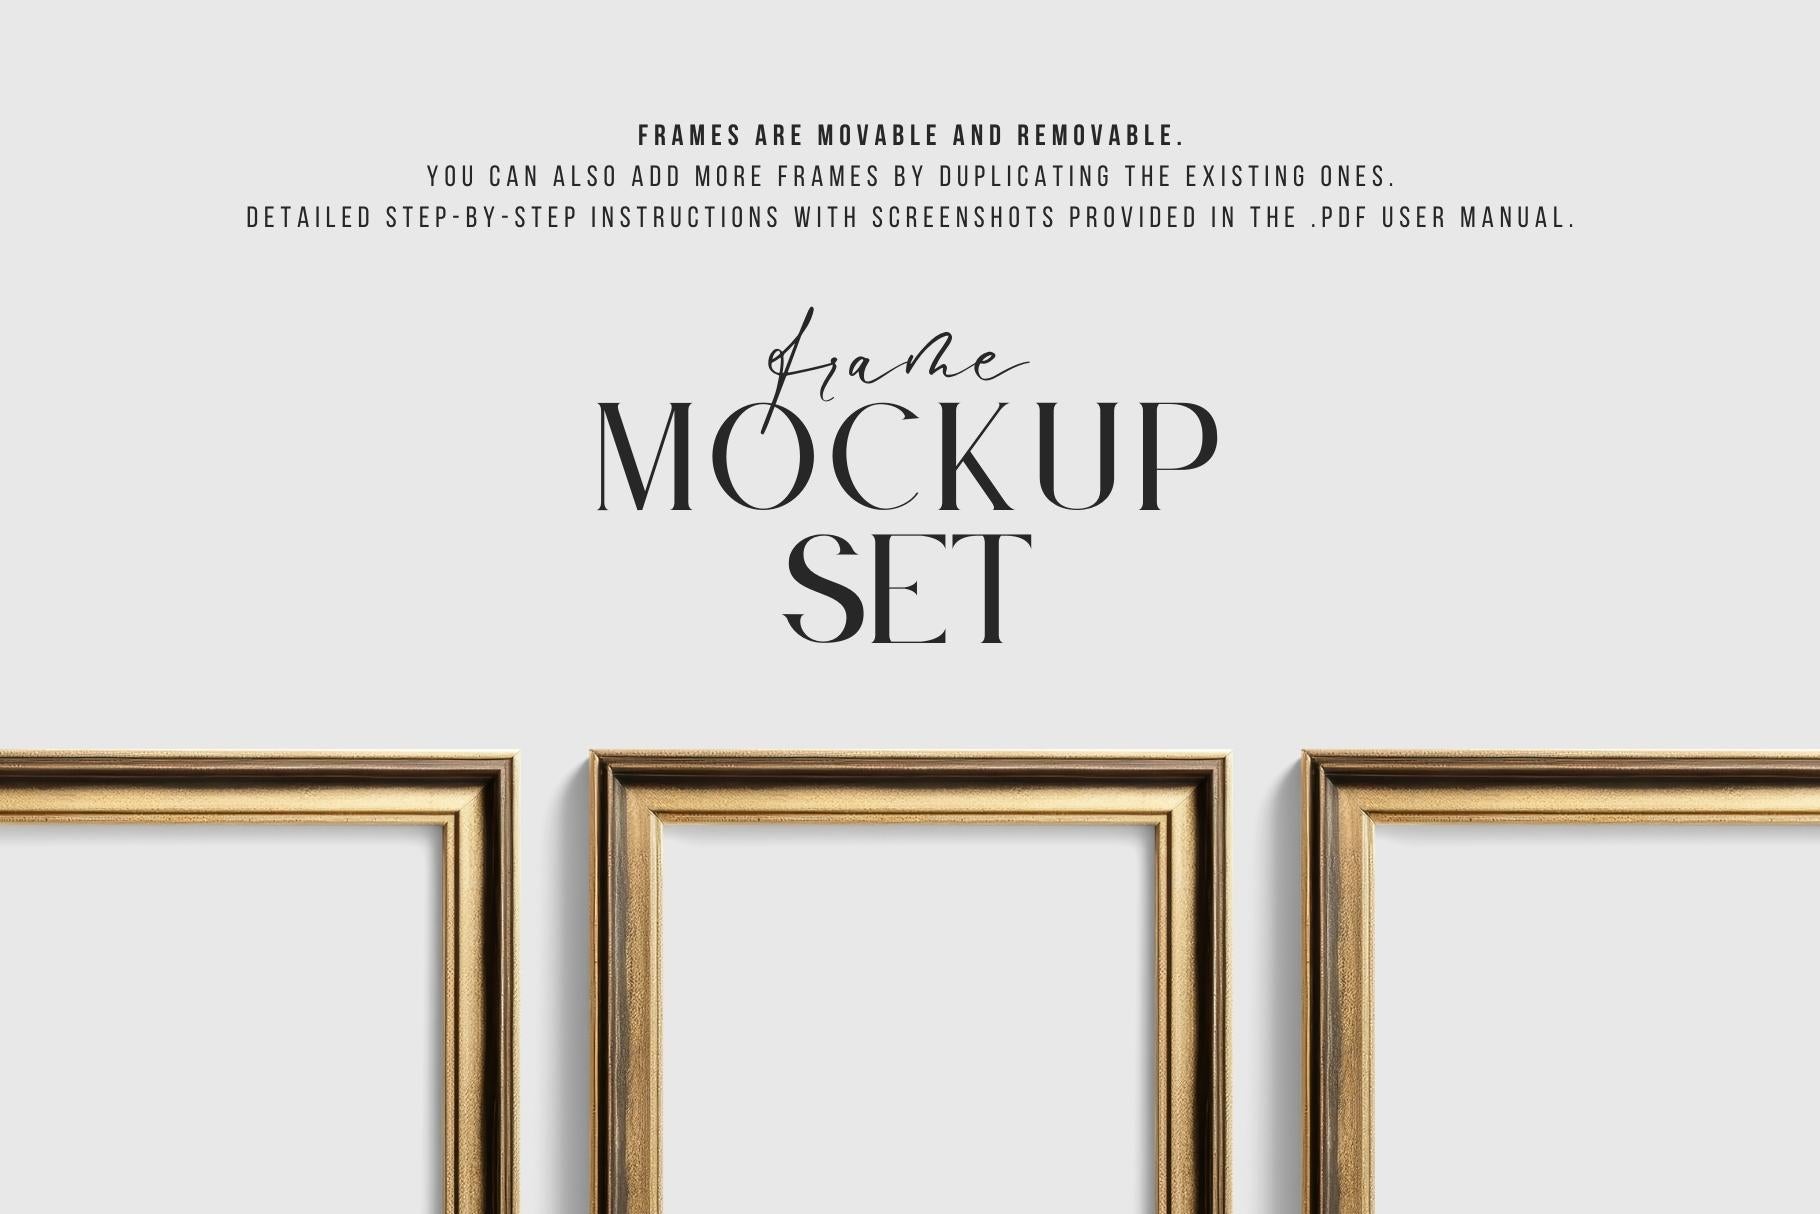 Metallic Frame Mockup Set of 6 Vertical Frames 2:3 | Vintage Gold Frame Mockup Set | PSD Template + Transparent PNG Files